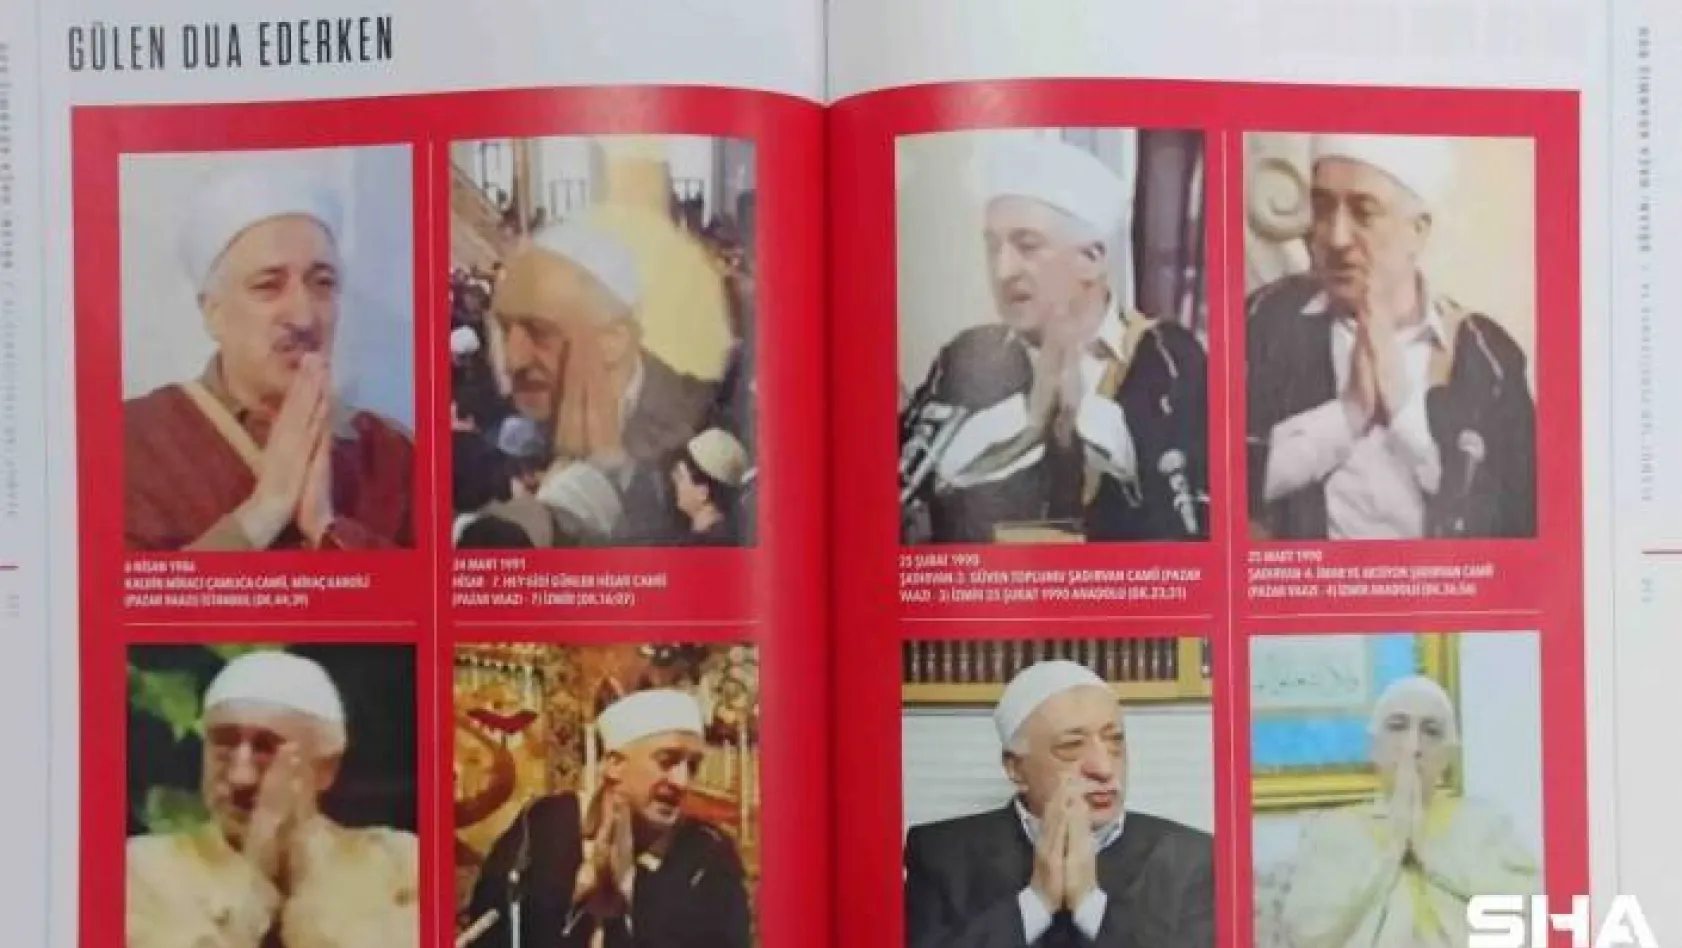 FETÖ Lideri Gülen'in el hareketleri ve figürlerinin Hristiyanlık ritüelleri ile benzerliği kitap oldu